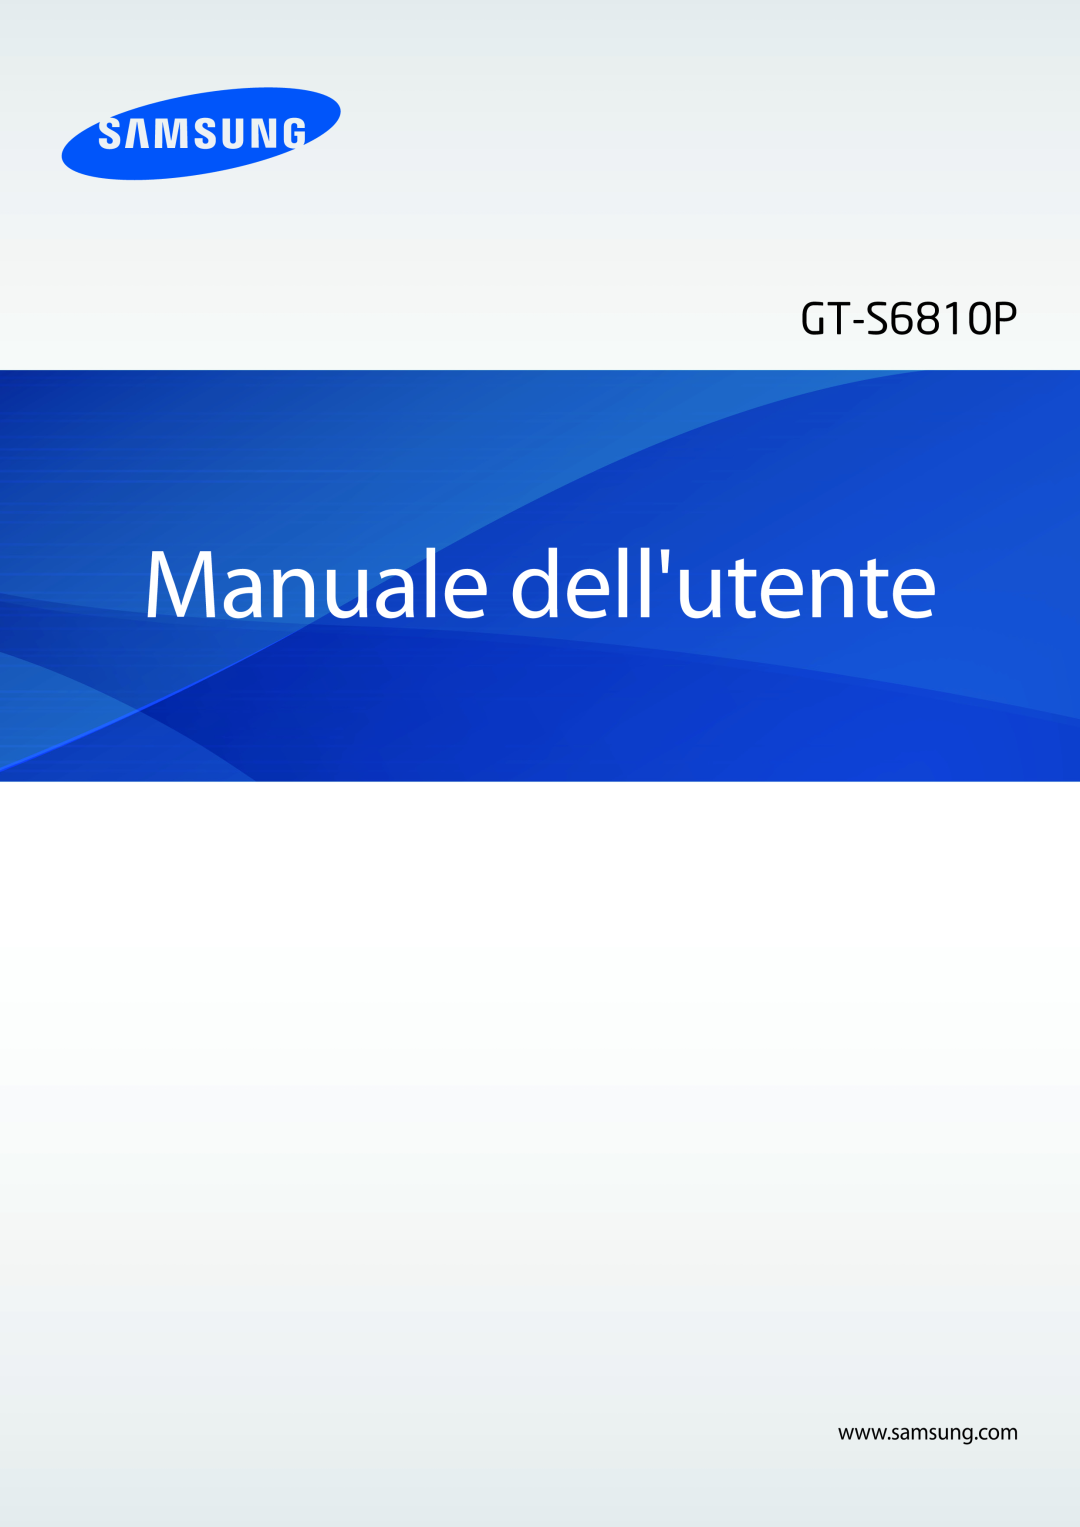 Samsung GT-S6810PWNWIN, GT-S6810MBNWIN, GT-S6810PWNITV, GT-S6810MBCVNN, GT-S6810MBNTIM manual Manuale dellutente 